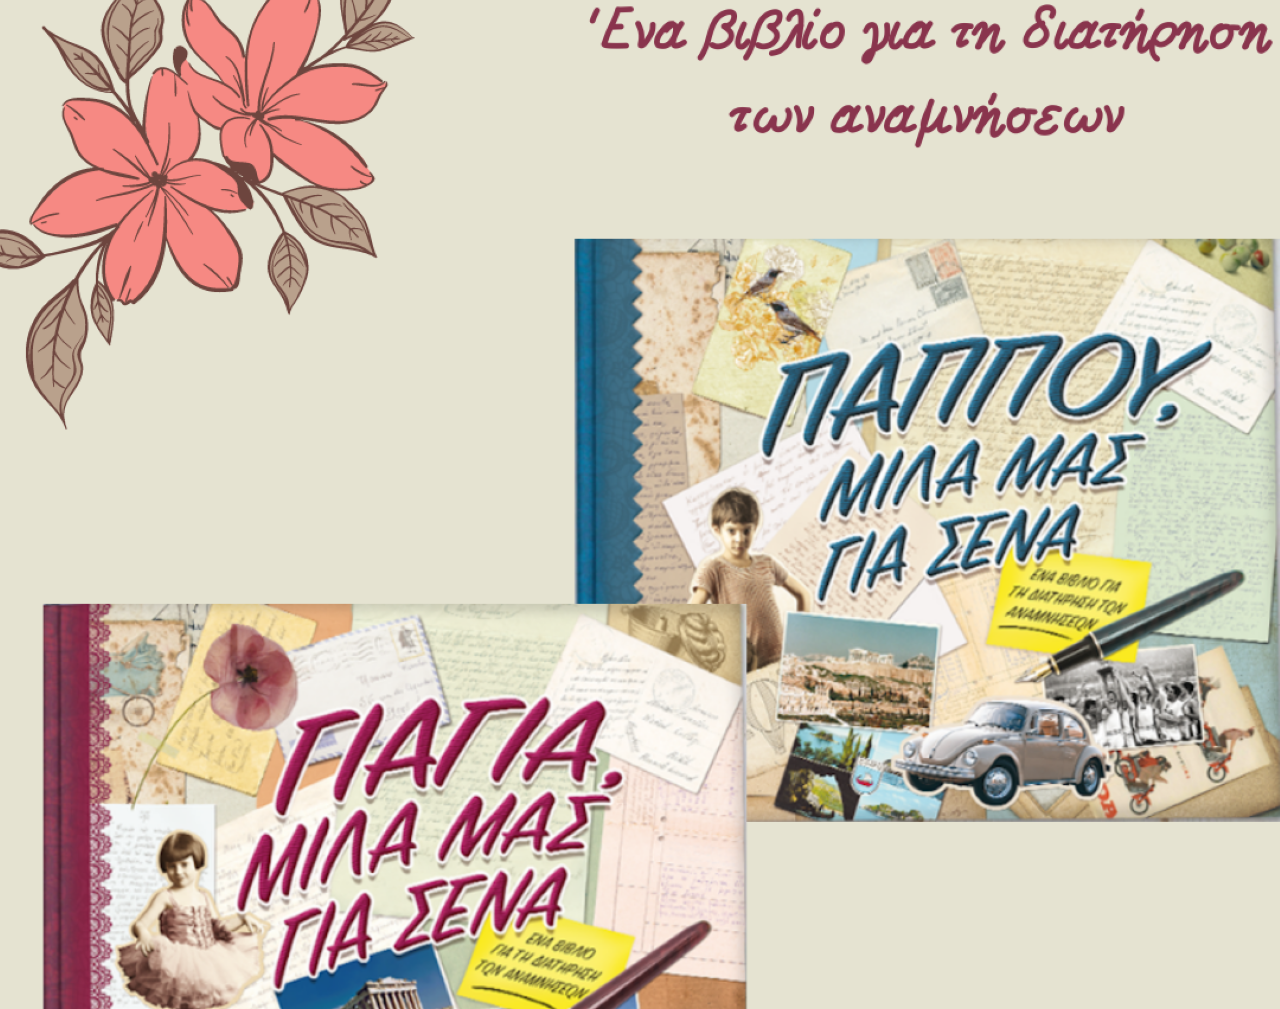 Τα bestseller βιβλία αφιερωμένα στη Γιαγιά και τον Παππού, κυκλοφορούν για πρώτη φορά στην Ελλάδα